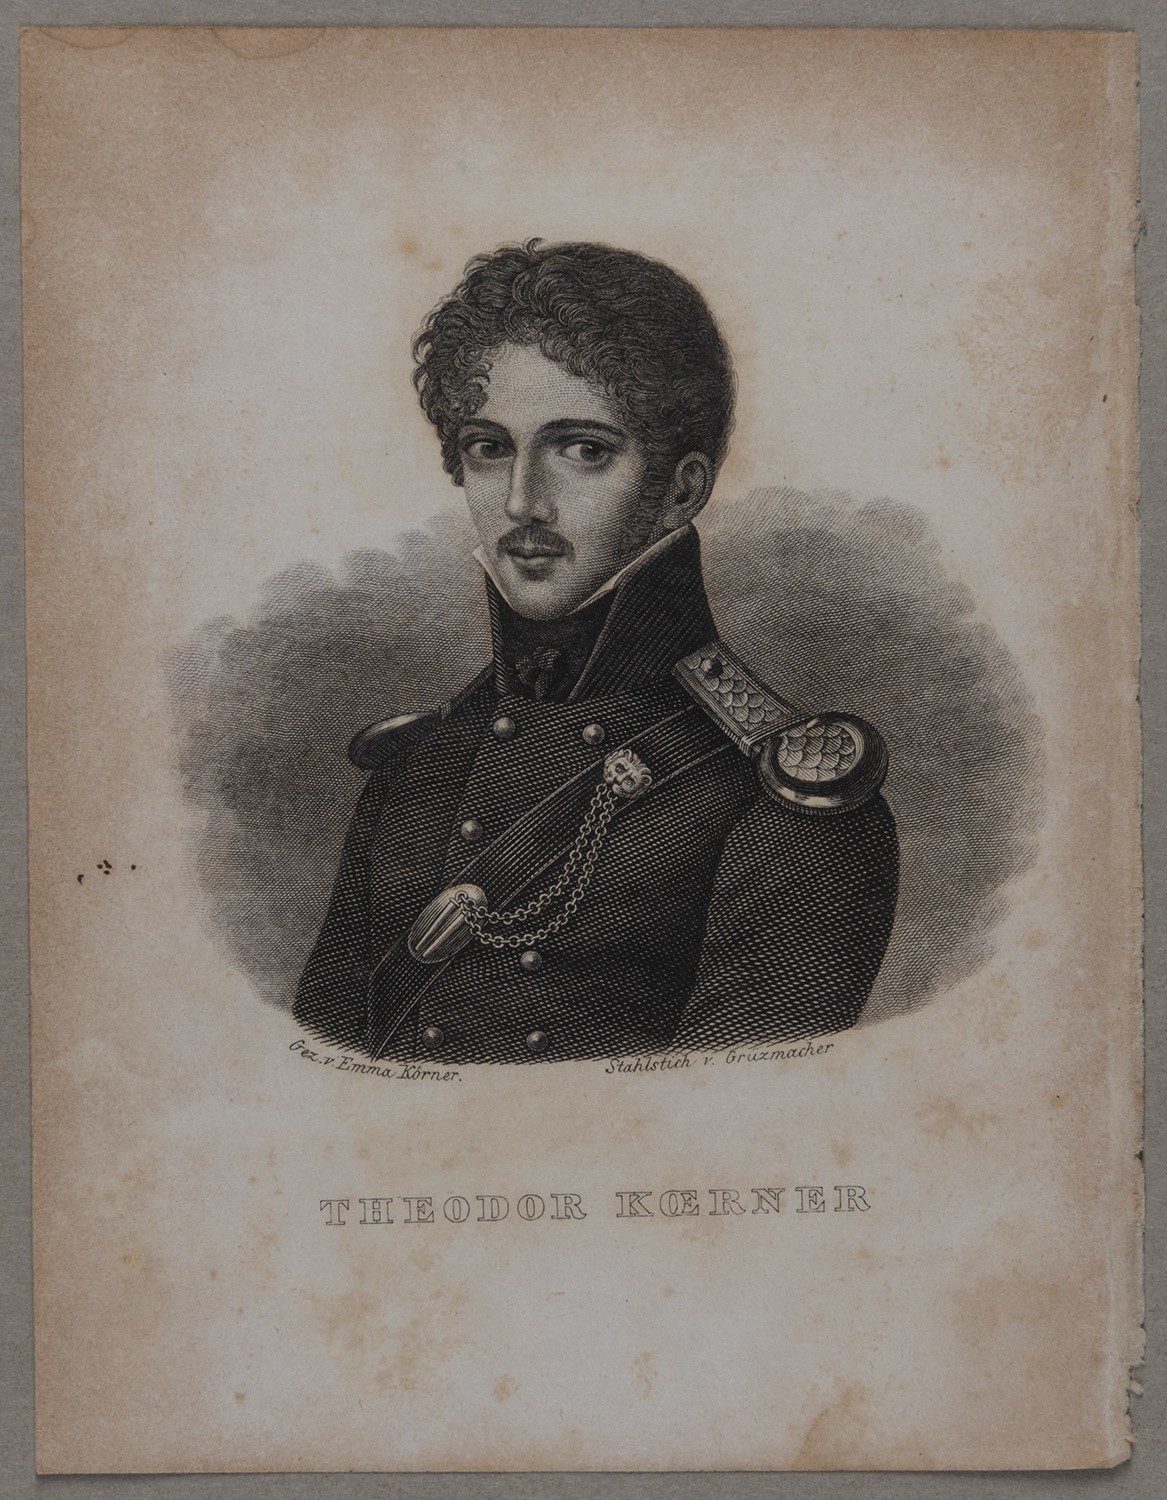 Körner, Theodor (1791-1813), Dichter und Freiheitskämpfer (Landesgeschichtliche Vereinigung für die Mark Brandenburg e.V., Archiv CC BY)